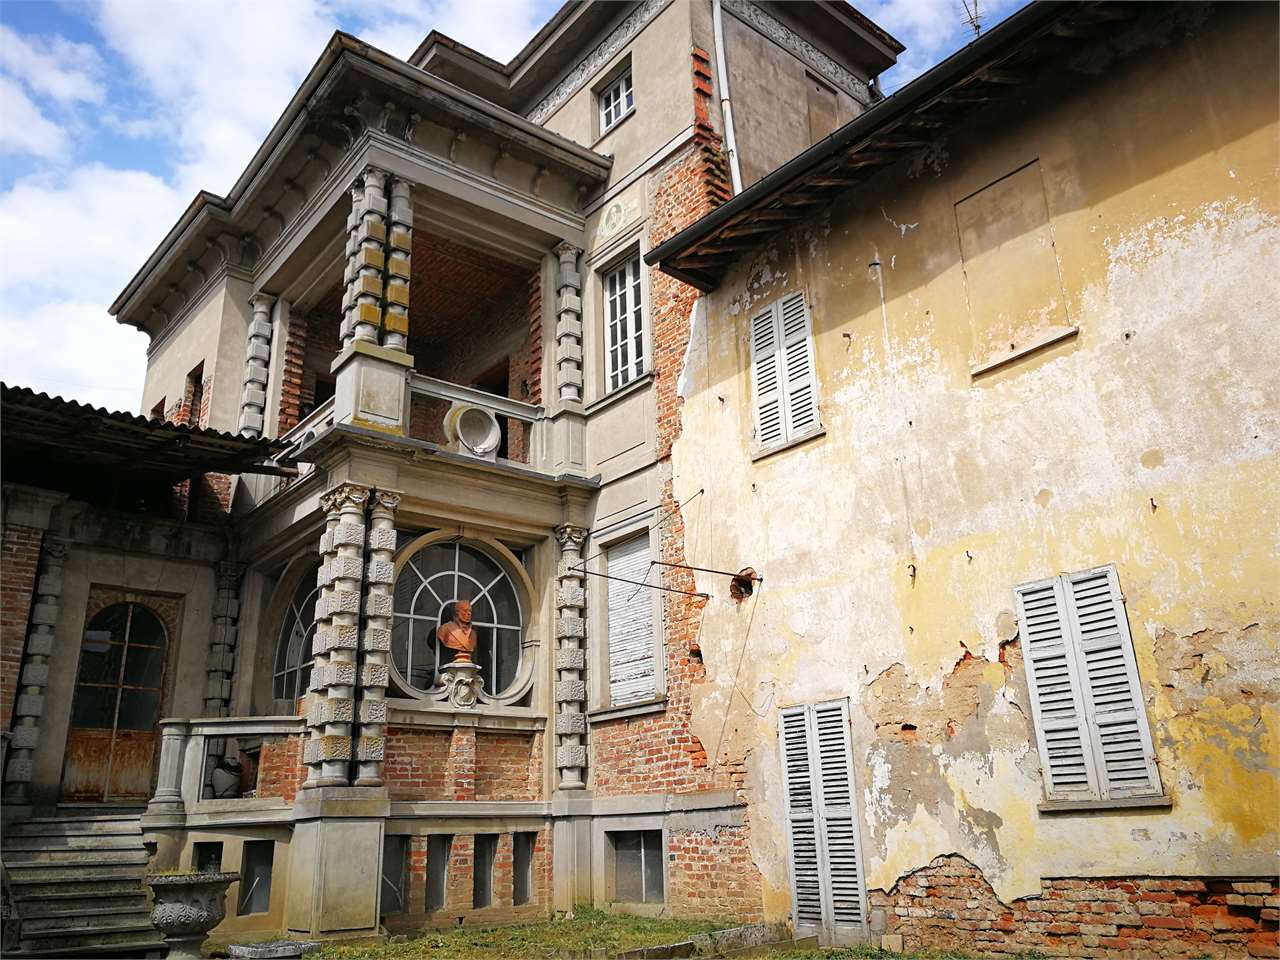 Palazzo / Stabile in vendita a Castelnovetto, 15 locali, prezzo € 40.000 | CambioCasa.it